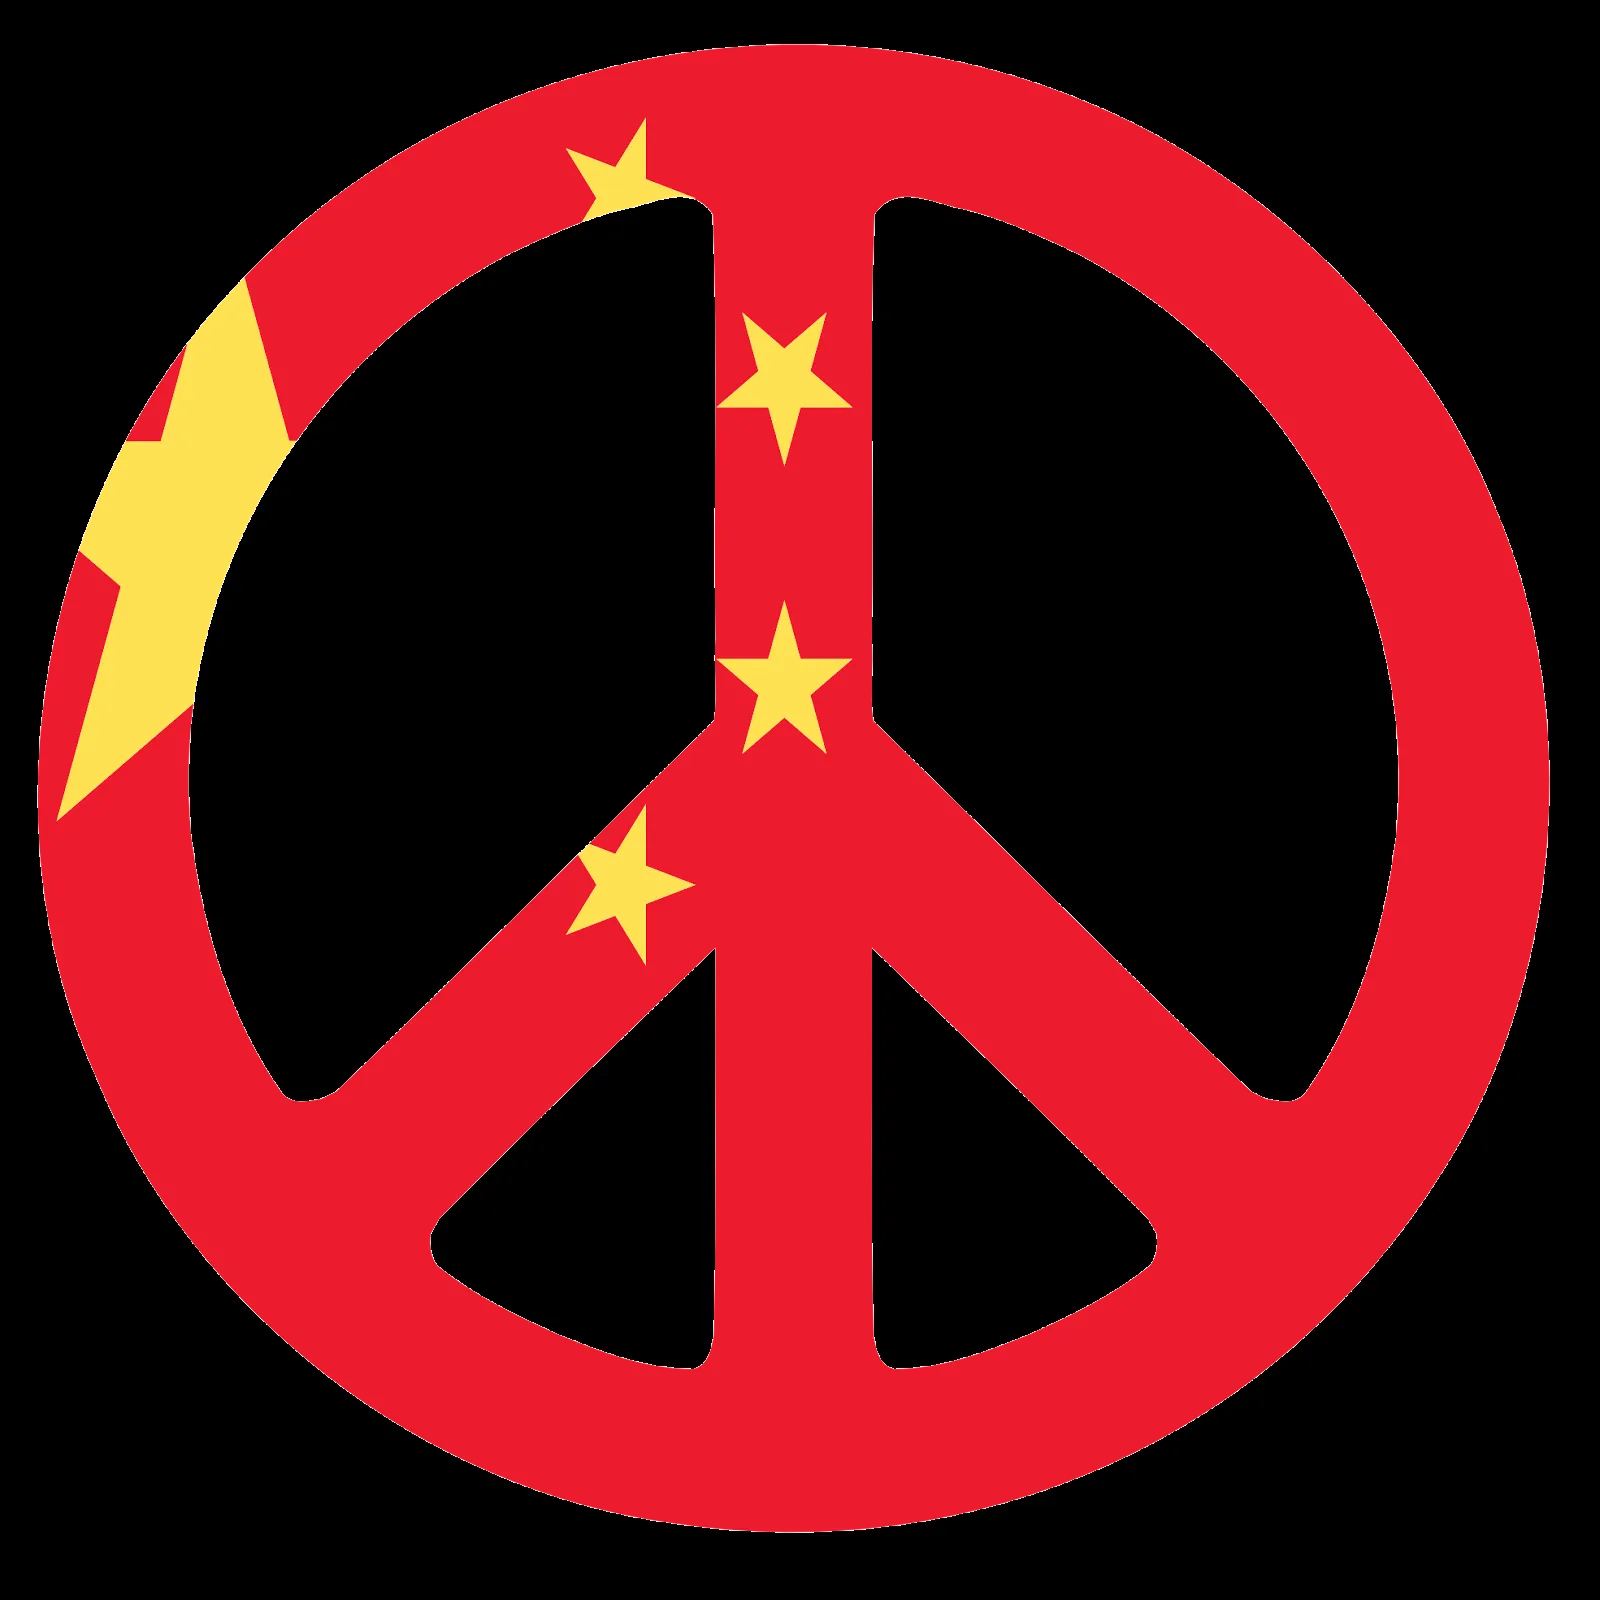 Imagenes y fotos: Simbolos de la Paz, parte 2